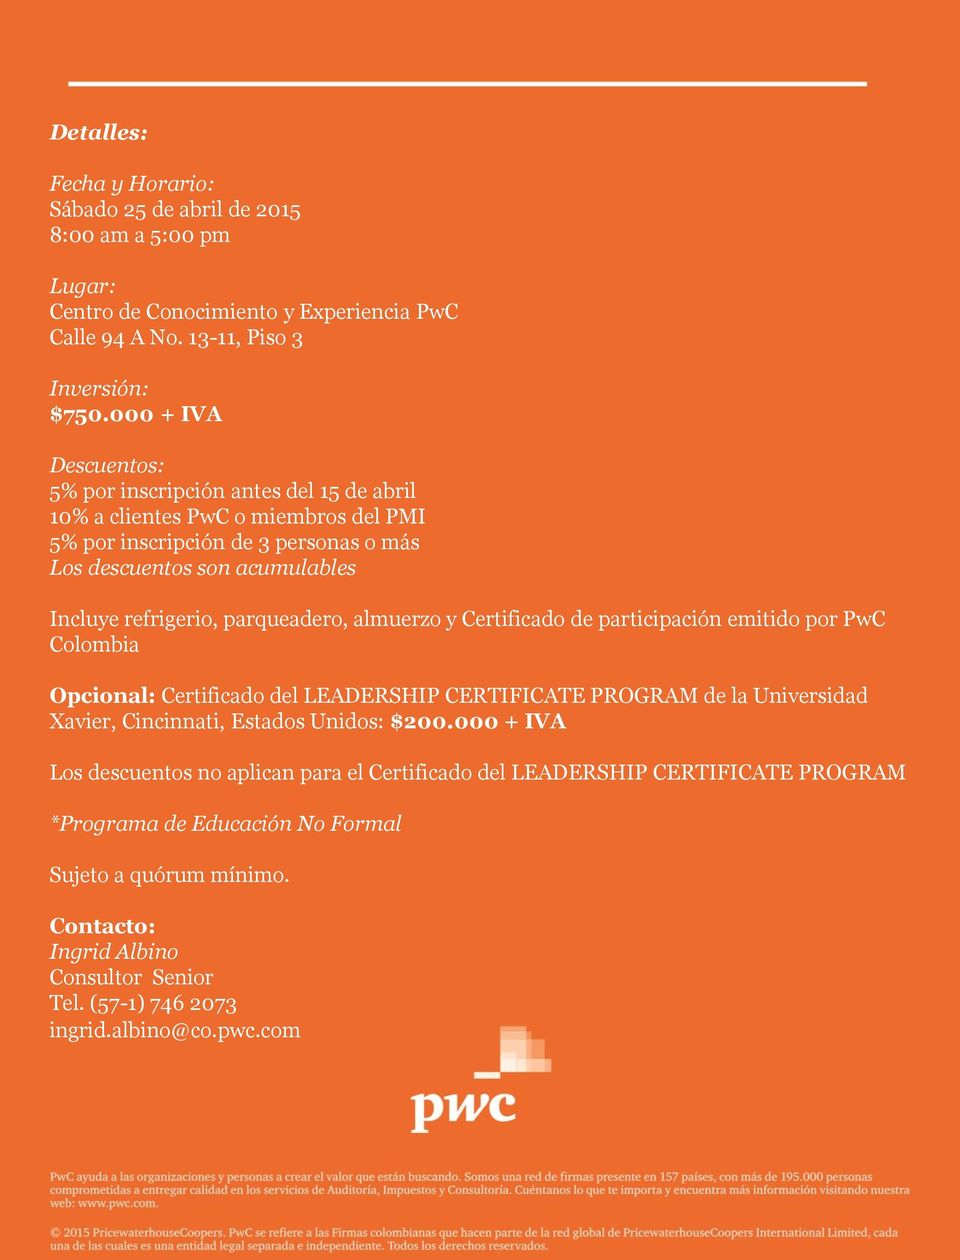 parqueadero, almuerzo y Certificado de participación emitido por PwC Colombia Opcional: Certificado del LEADERSHIP CERTIFICATE PROGRAM de la Universidad Xavier, Cincinnati, Estados Unidos: $200.